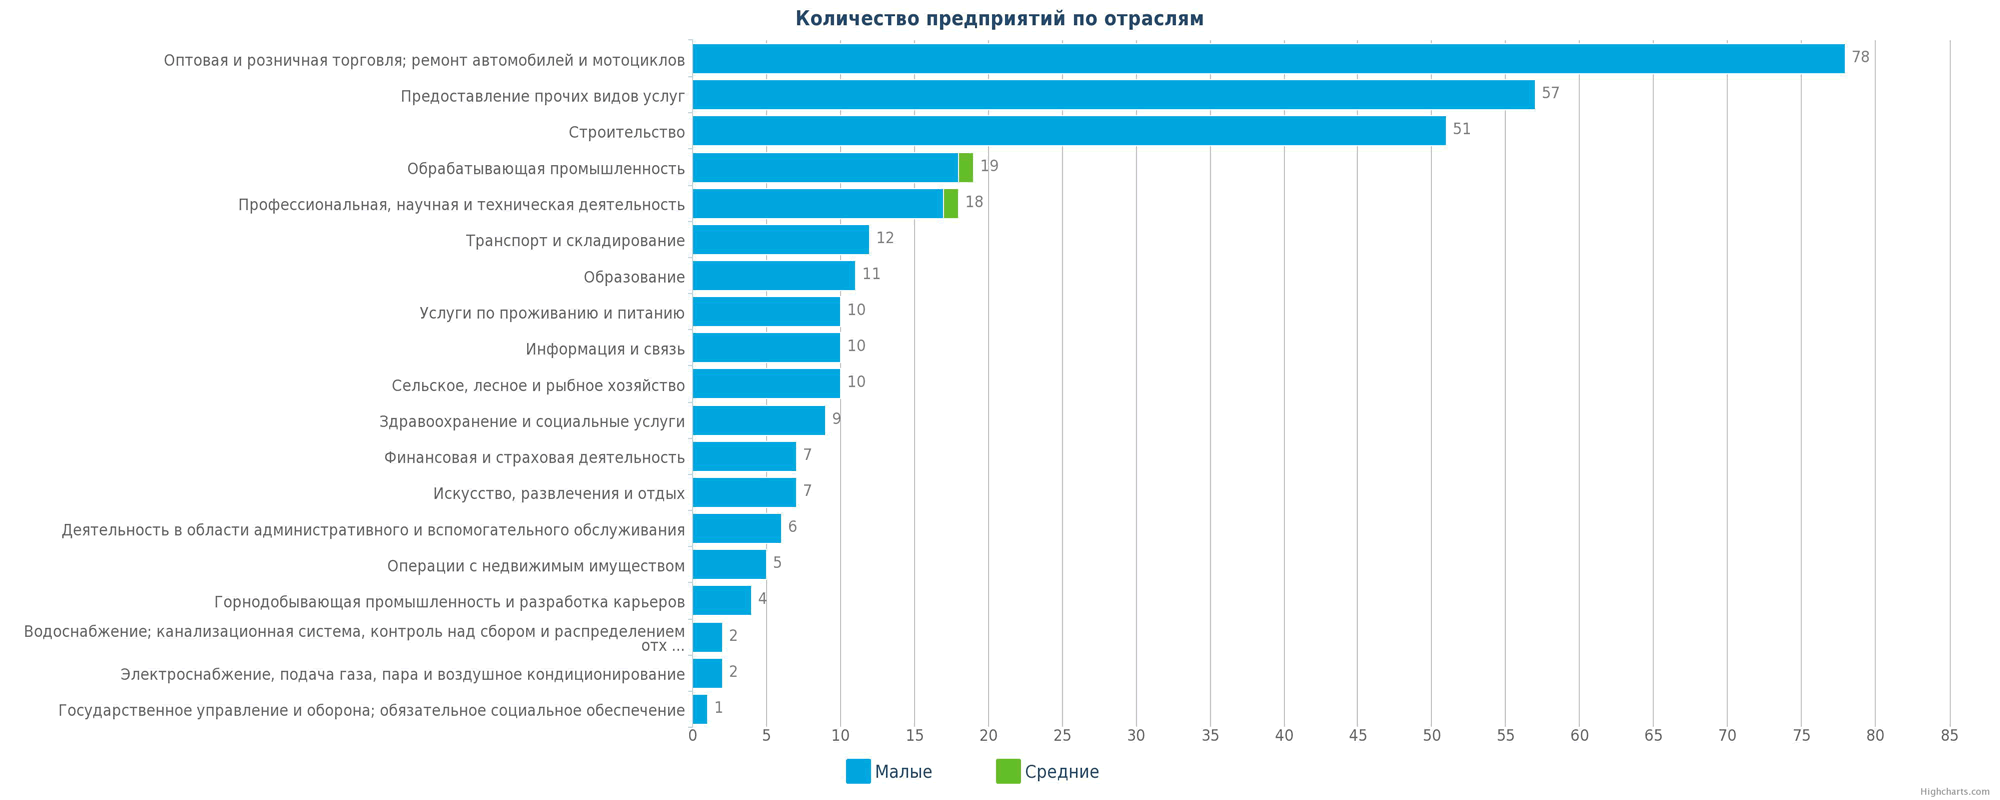 Количество новых юридических лиц в Казахстане по отраслям